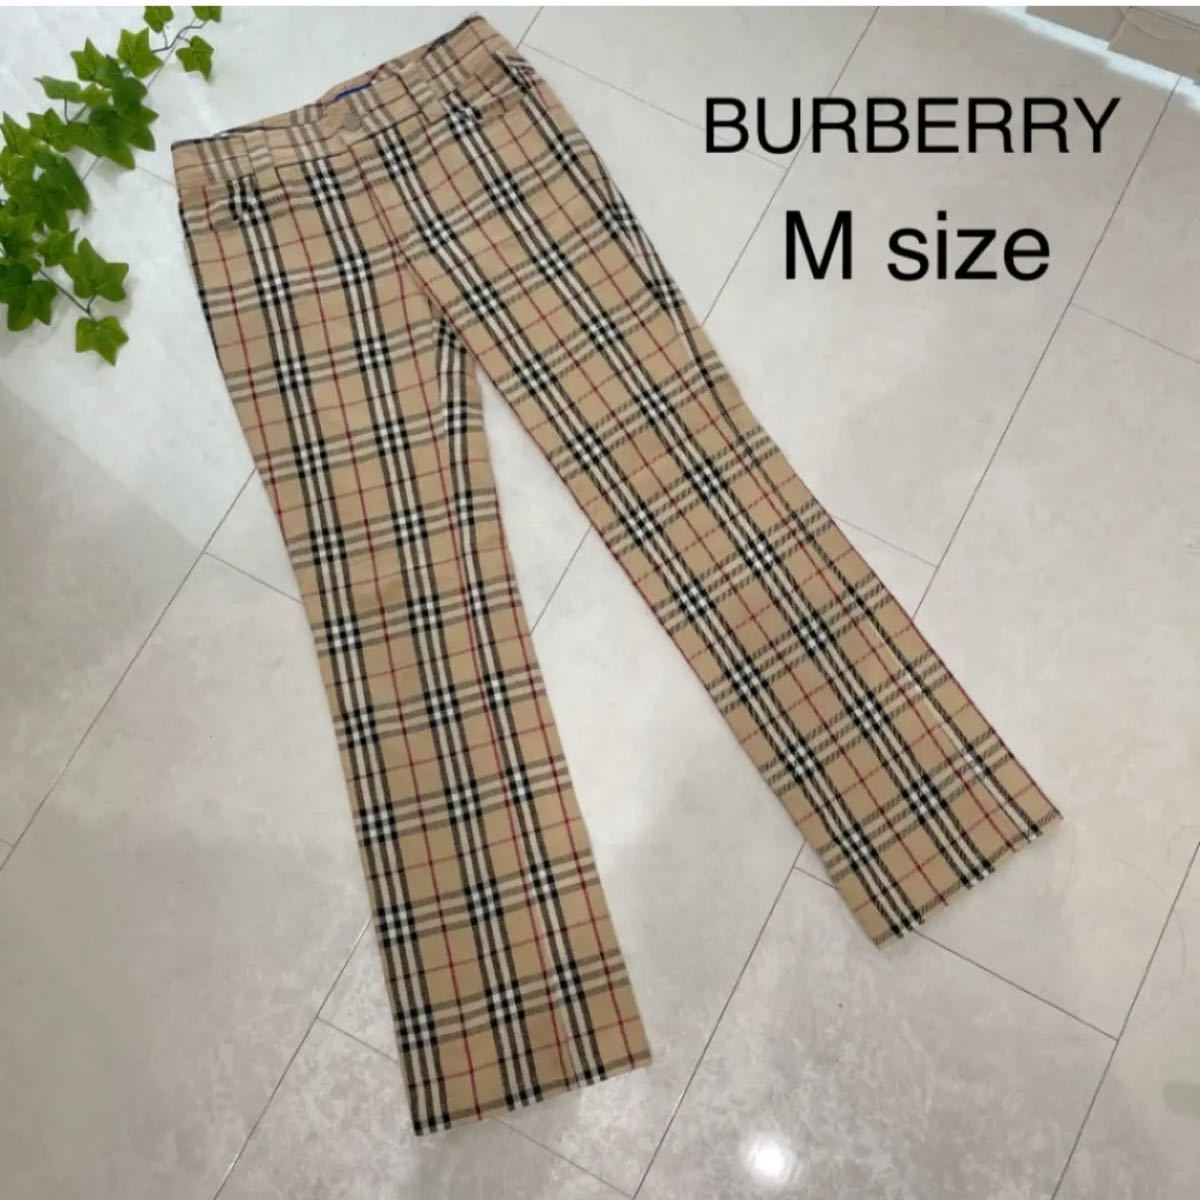 BURBERRY バーバリー ノバチェック パンツ ズボン Mサイズ